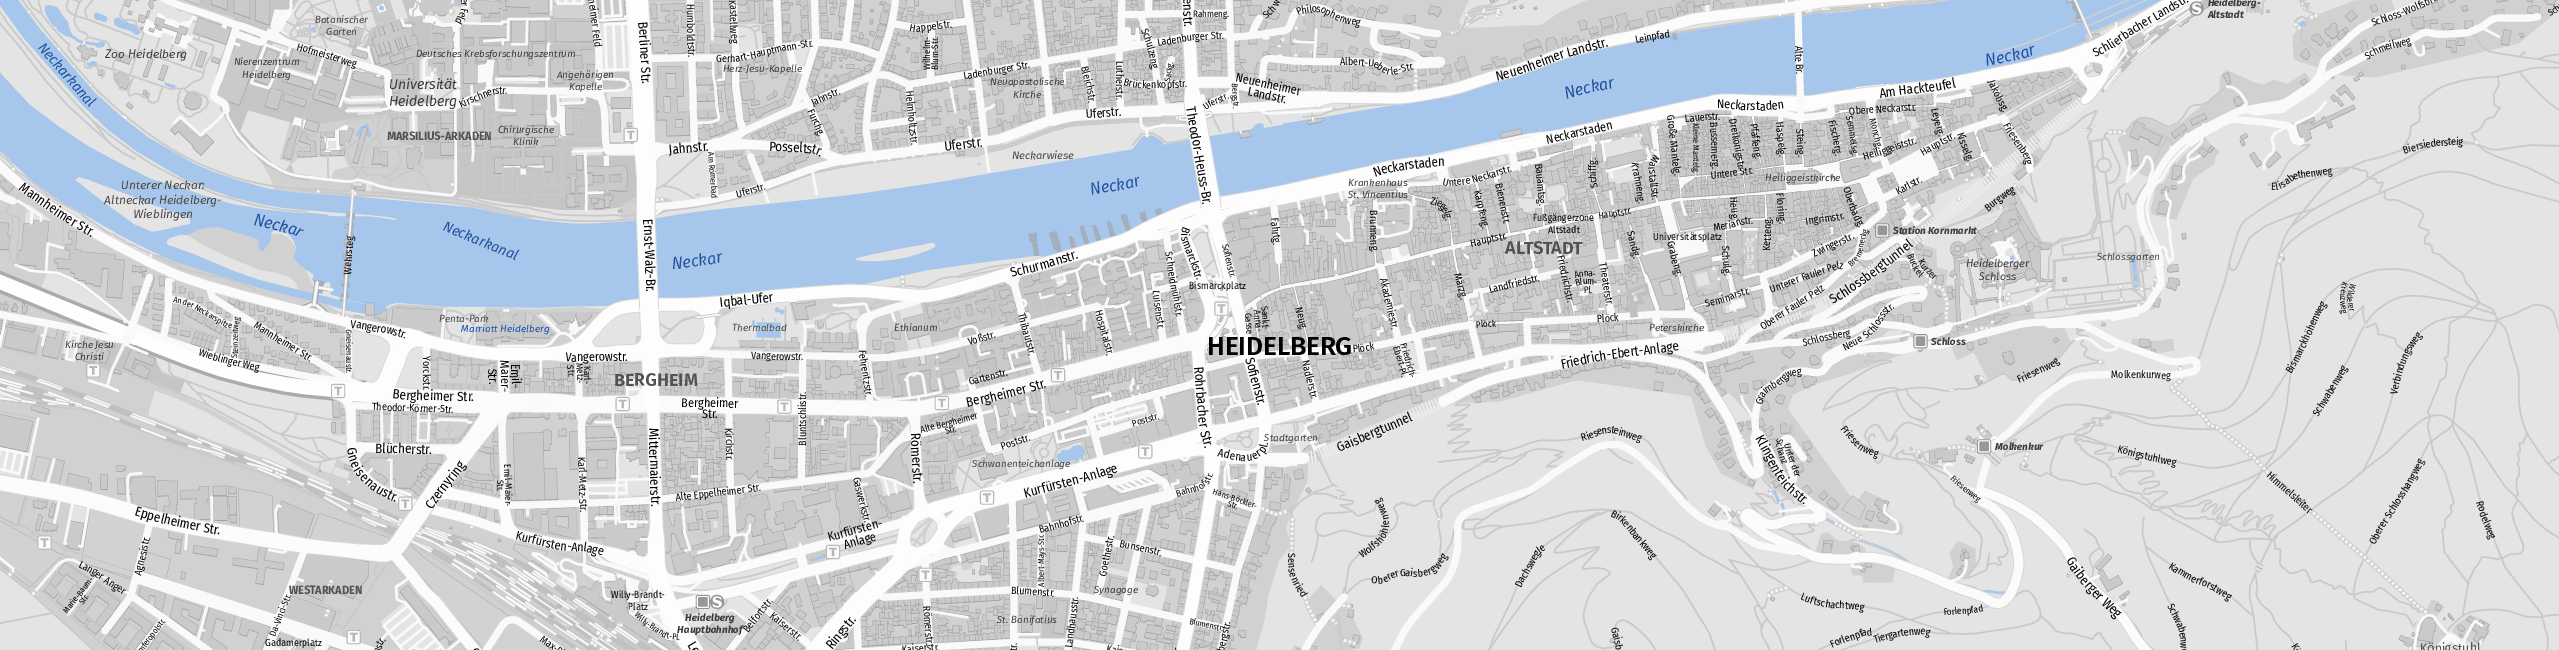 Stadtplan Heidelberg zum Downloaden.